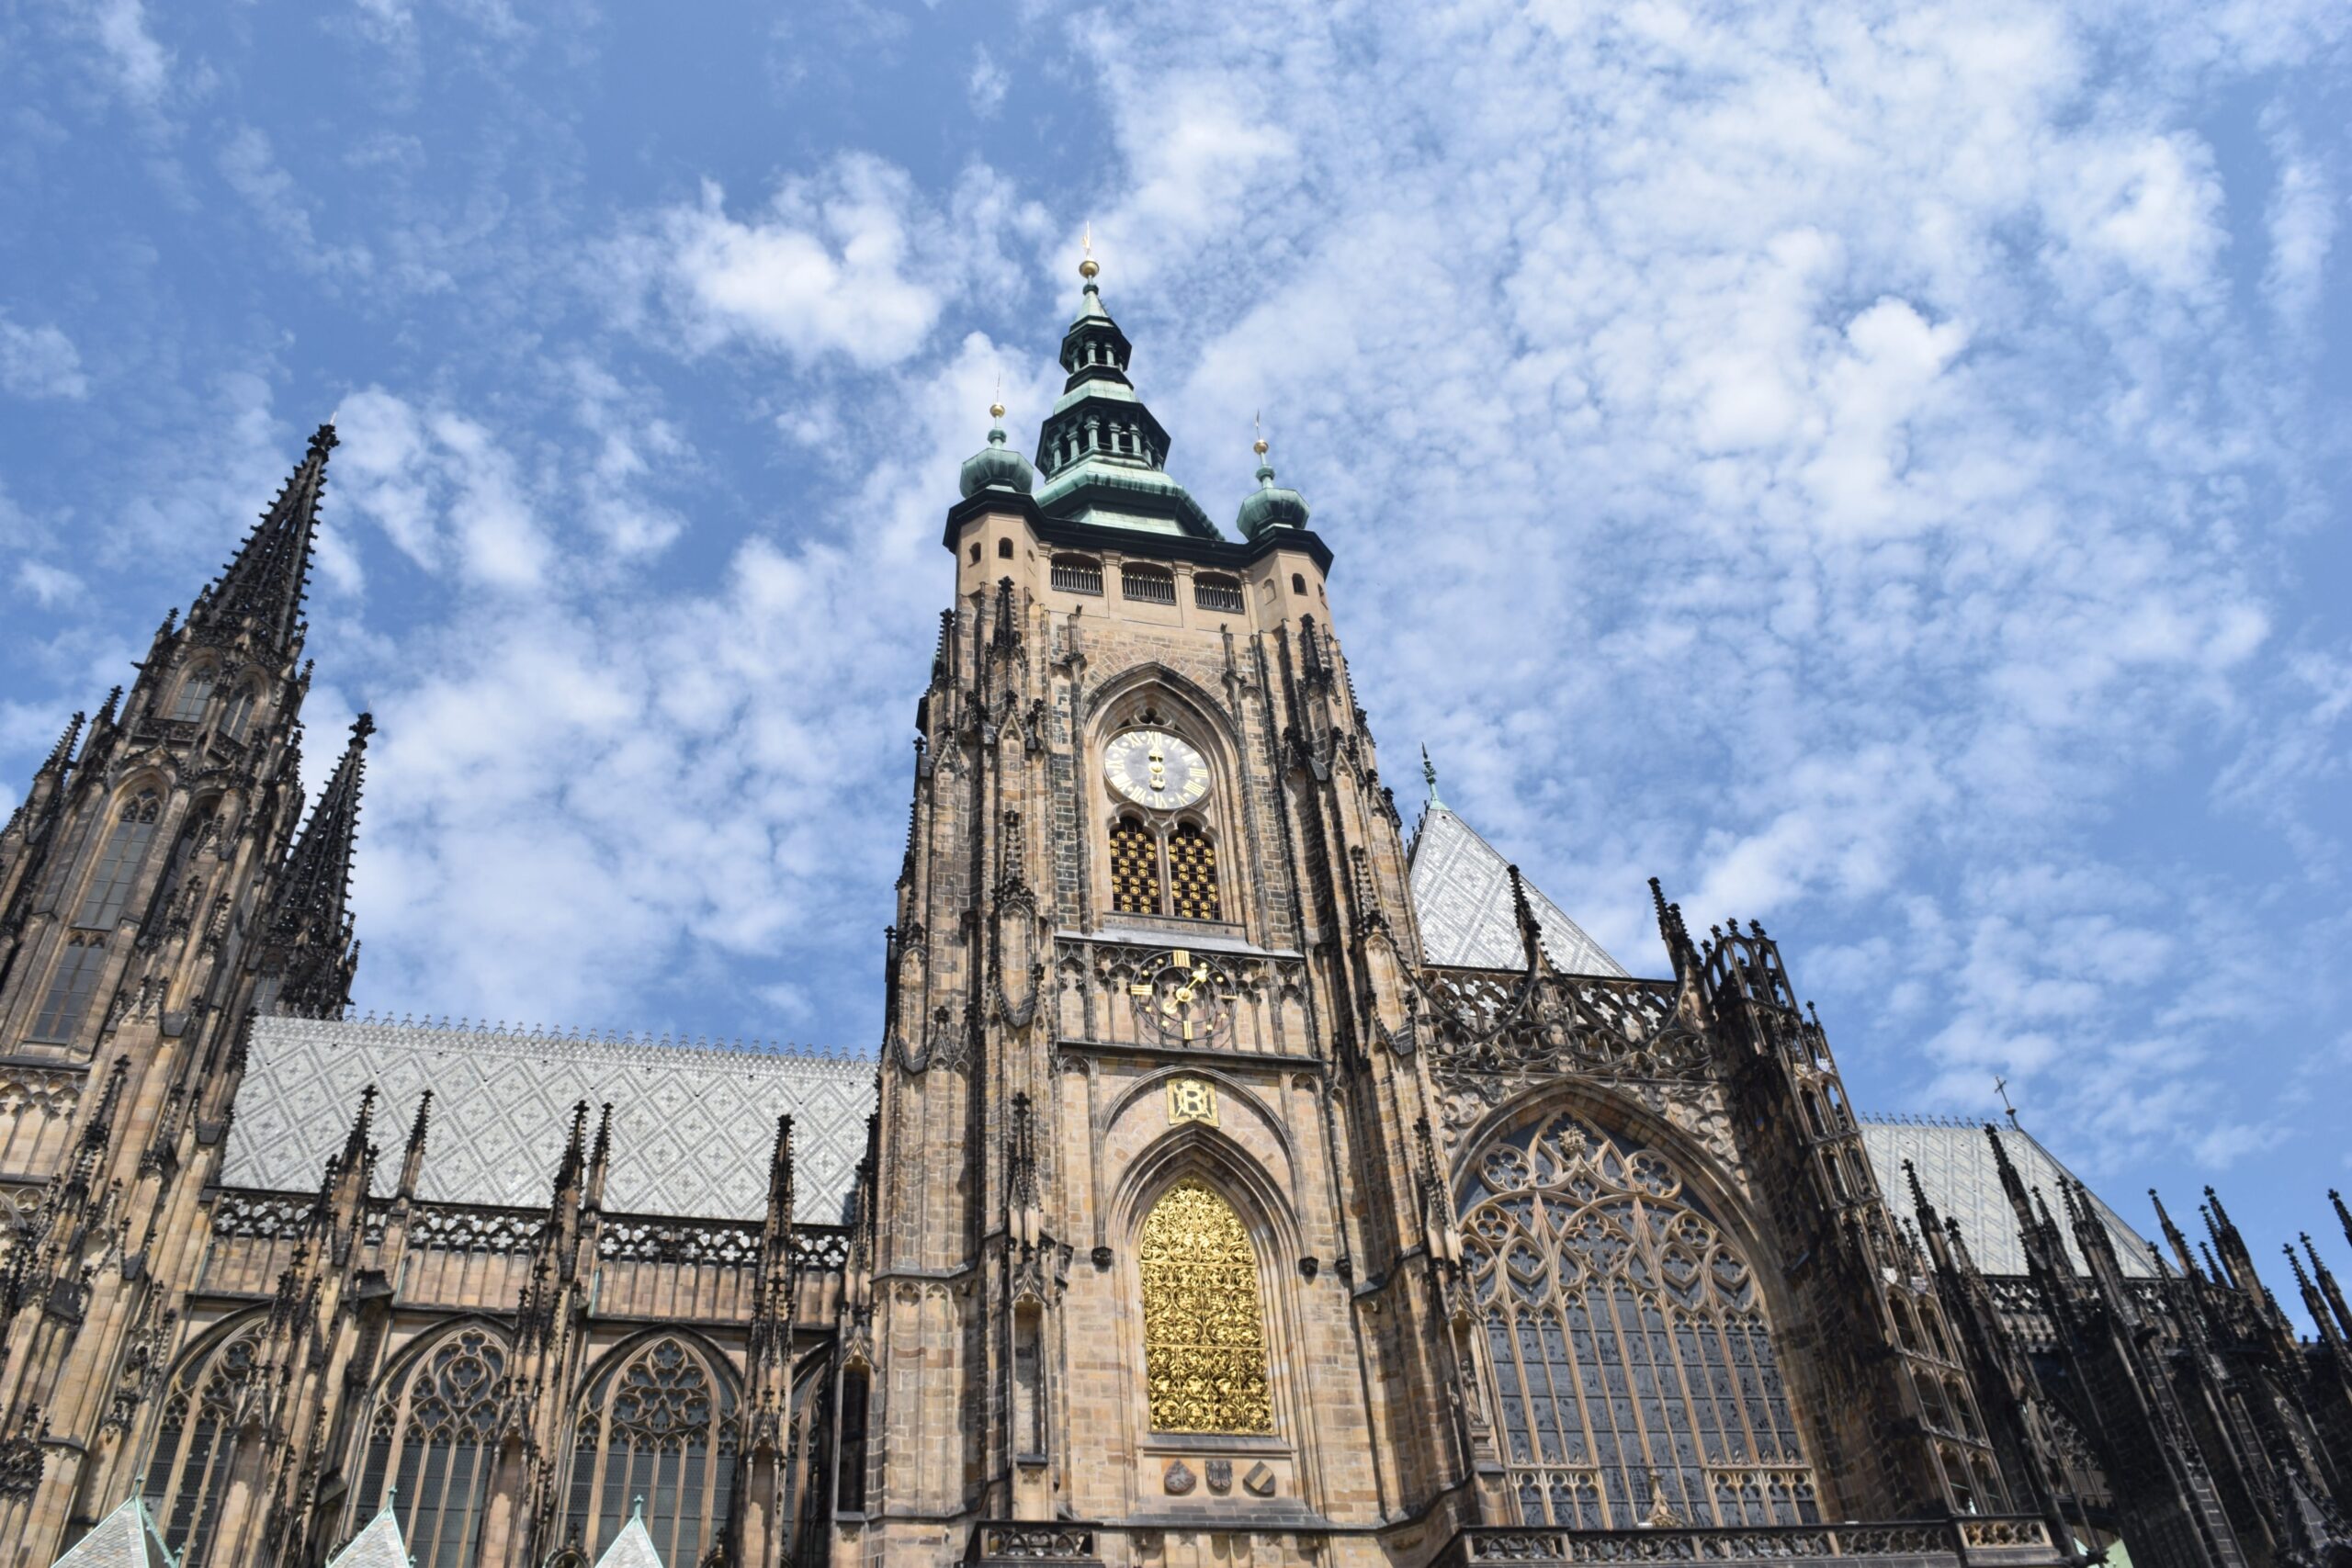 St. Vitus Cathedral (Katedrála svatého Víta), Prague, Czech Republic